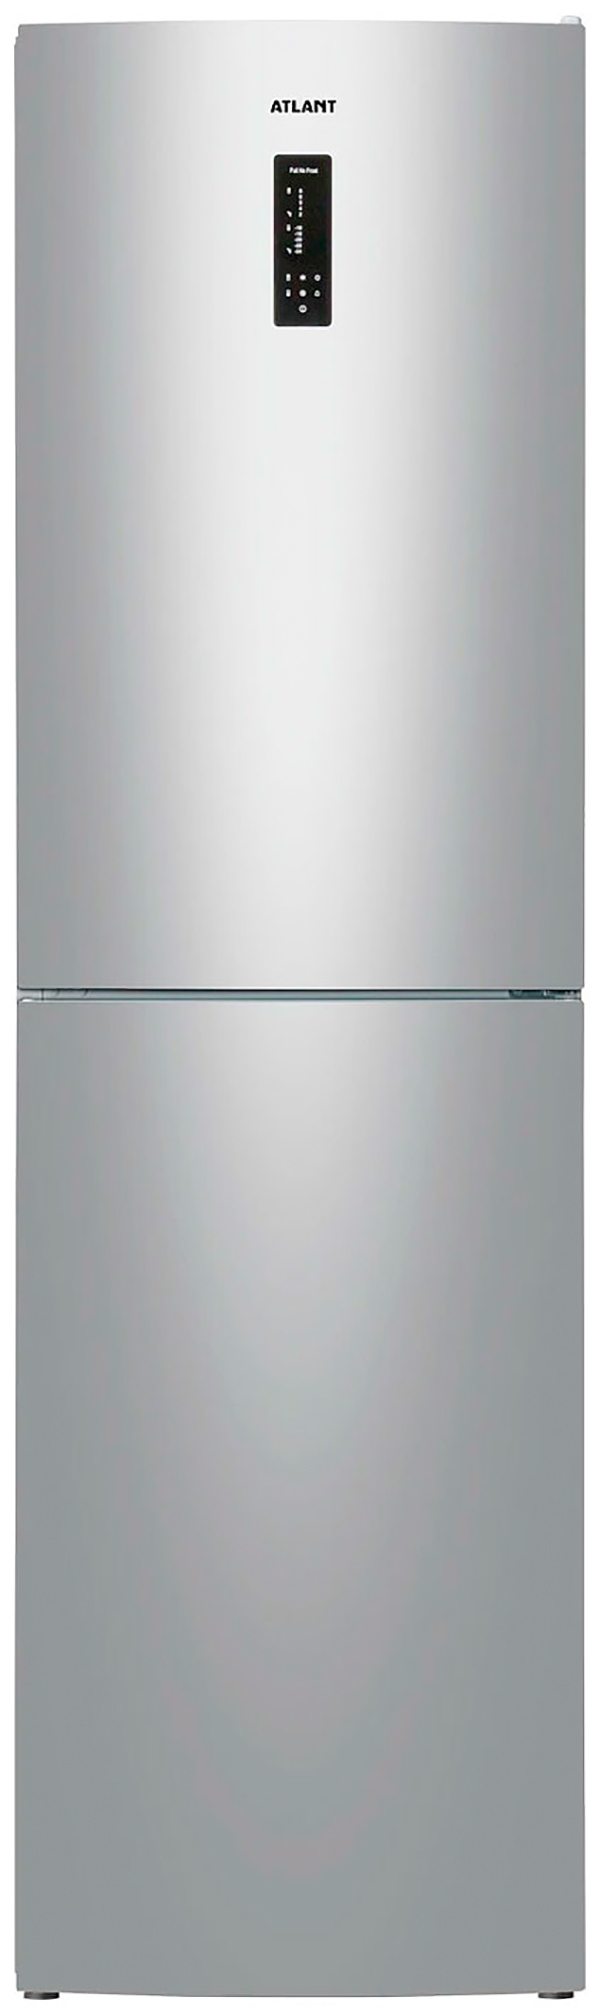 Холодильник ATLANT ХМ 4625-181 NL C серебристый холодильник atlant хм 4421 049 nd серебристый